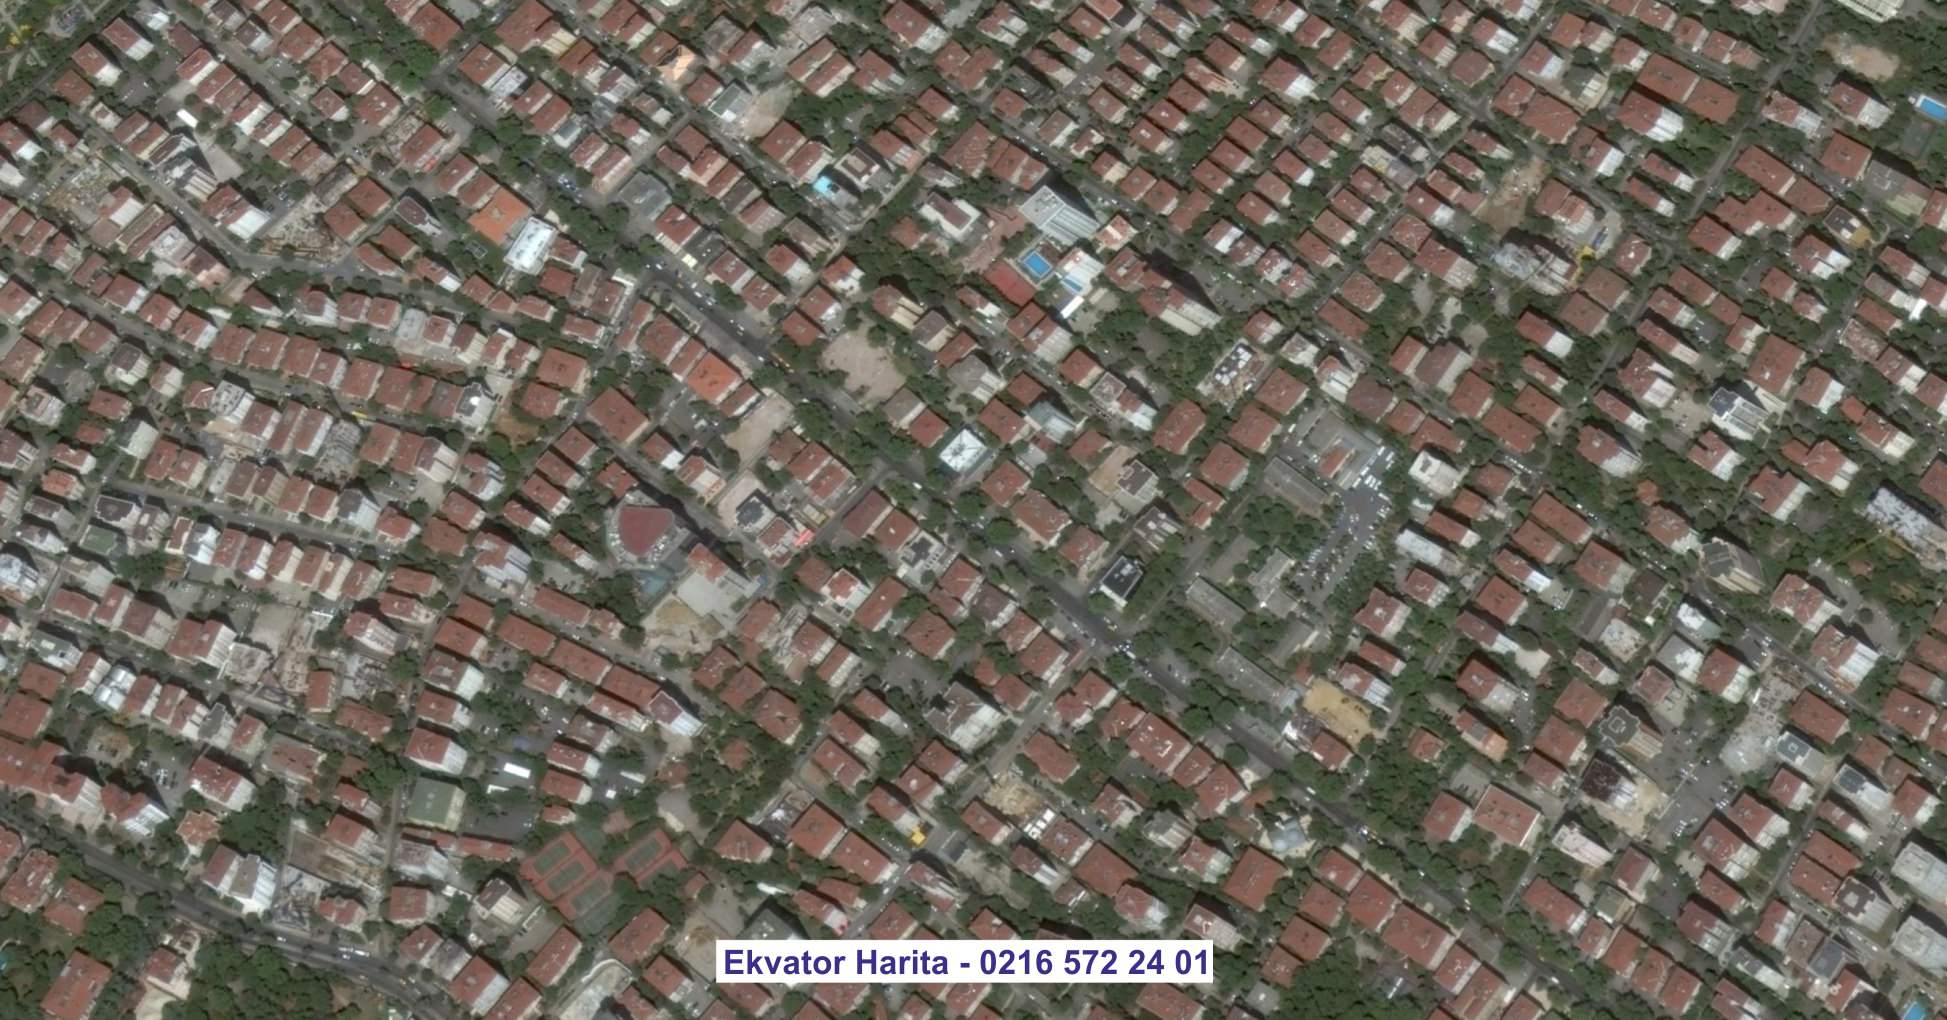 Silivri Uydu Görüntüsü Örnek Fotoğrafı